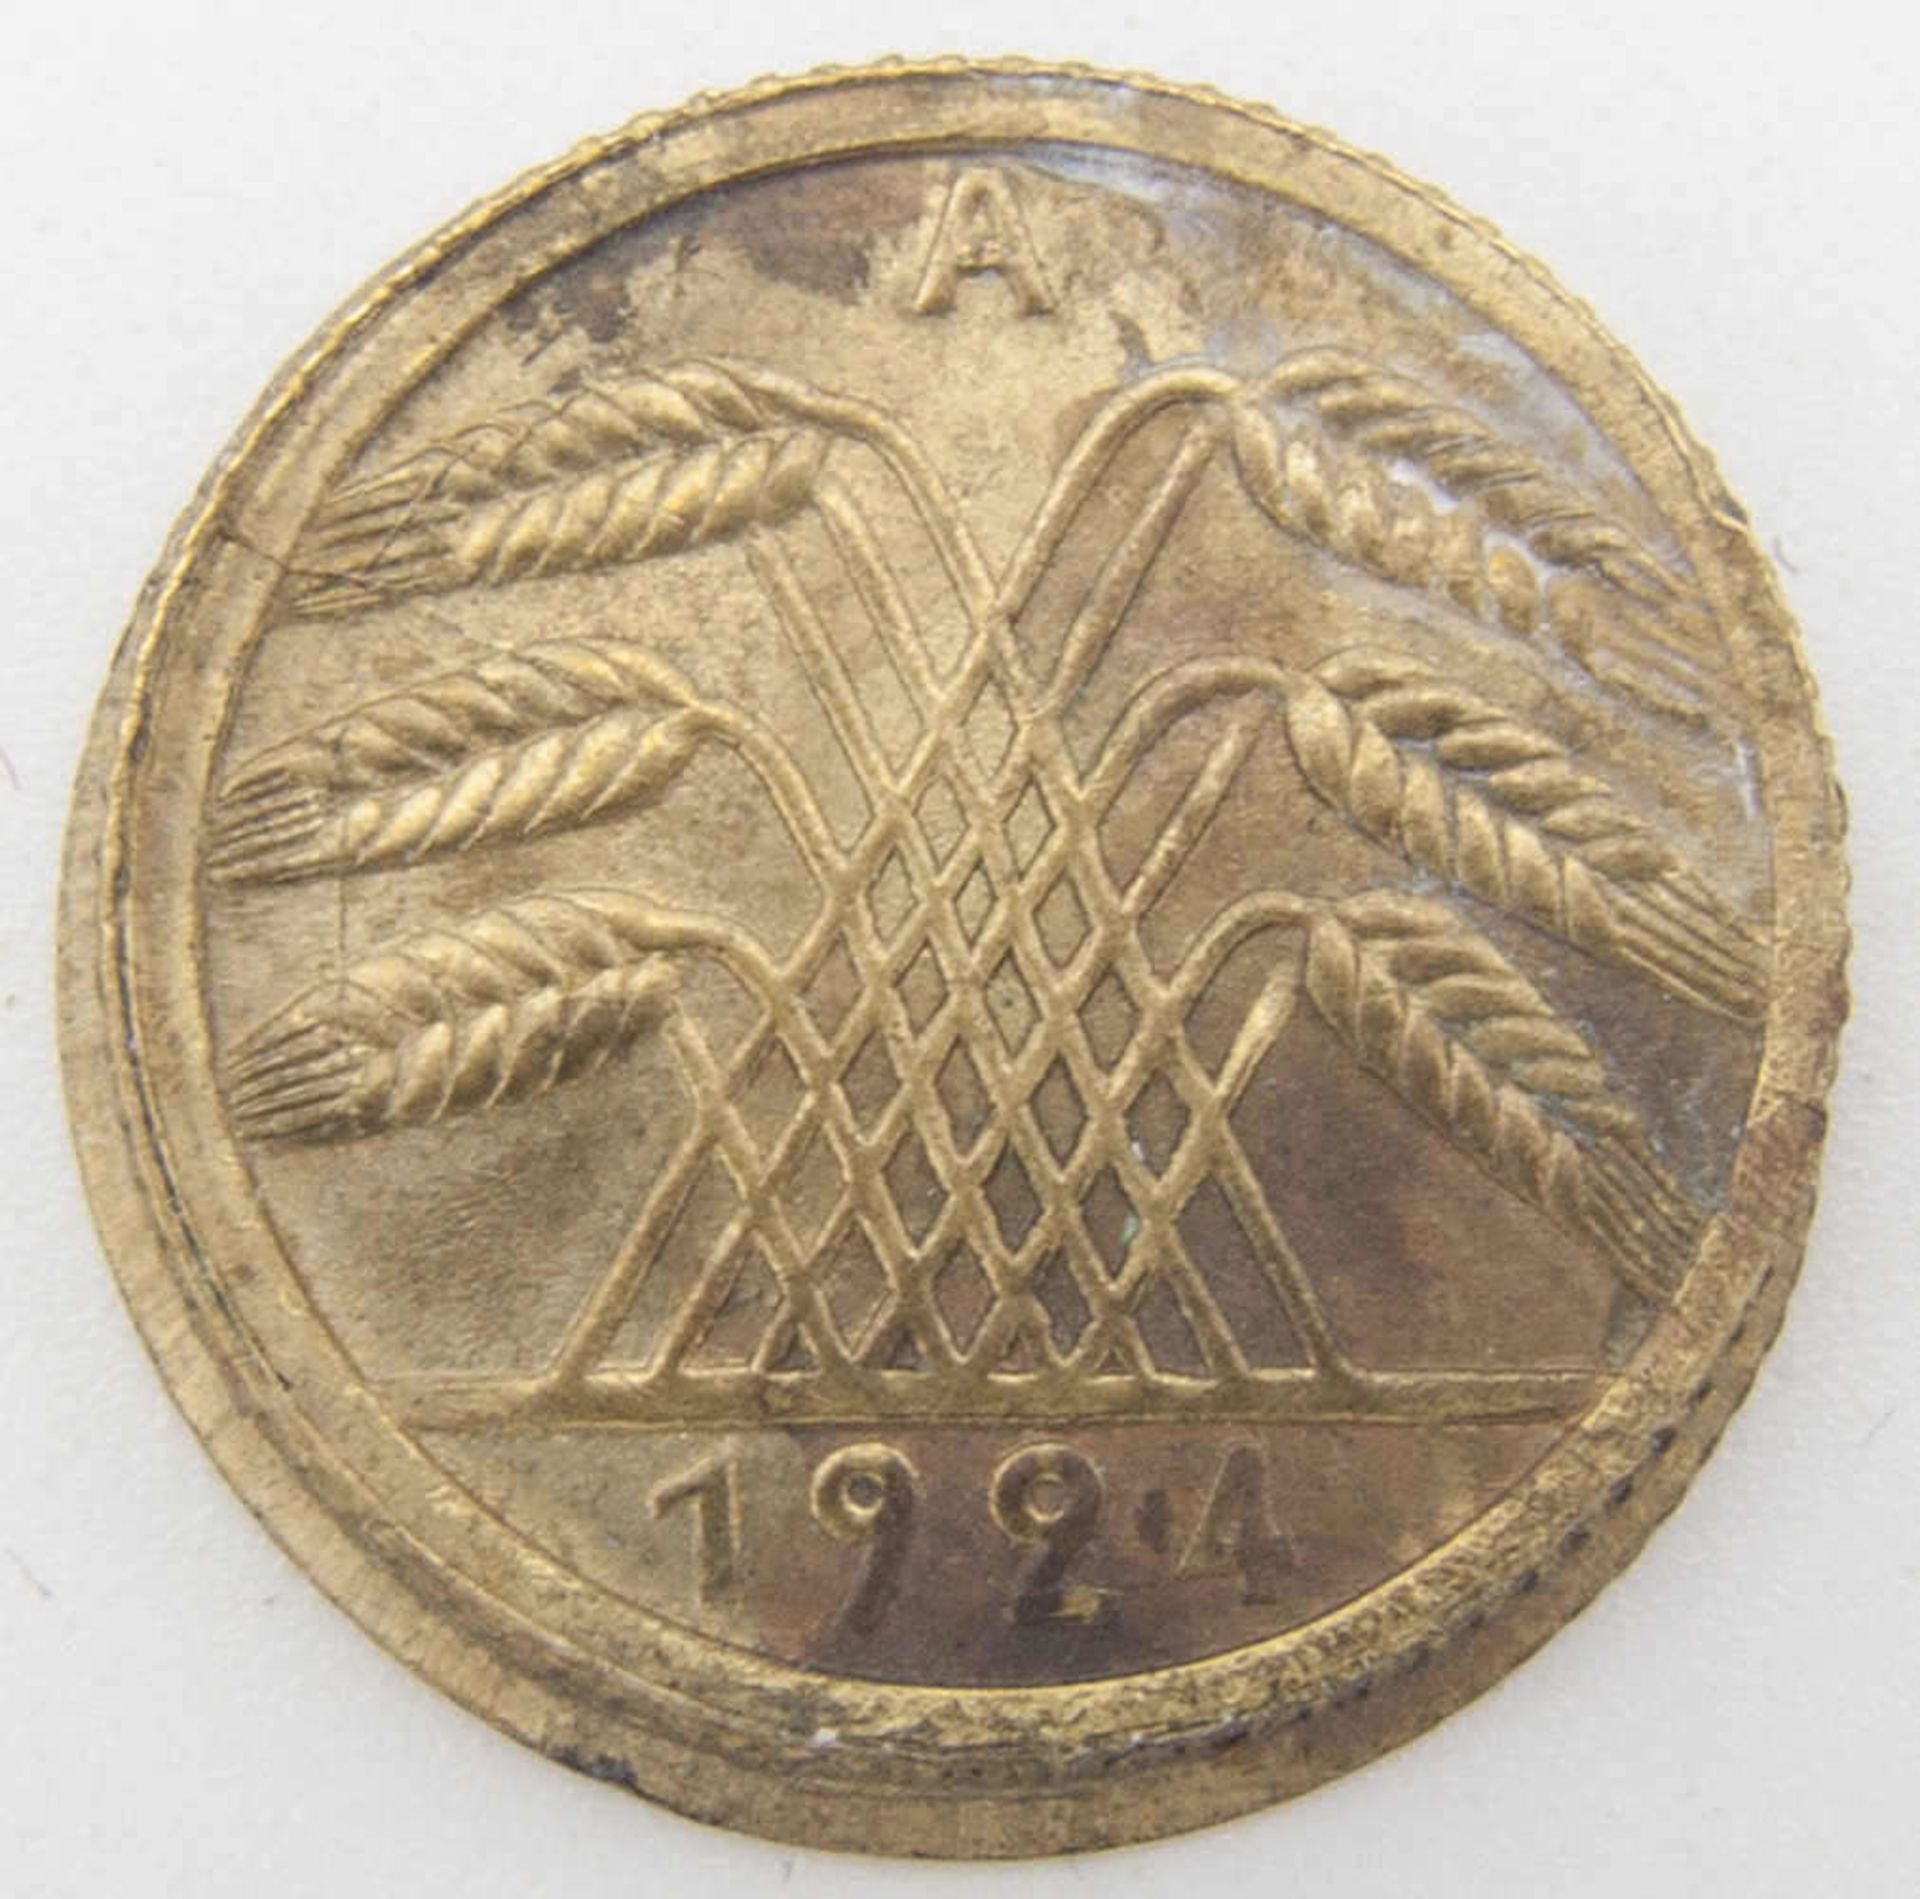 Weimarer Republik 5 Pfennig 1924 A, FEHRPRÄGUNG, 2 x Ährenseite, davon 1 x incus. Mit Riffelrand.